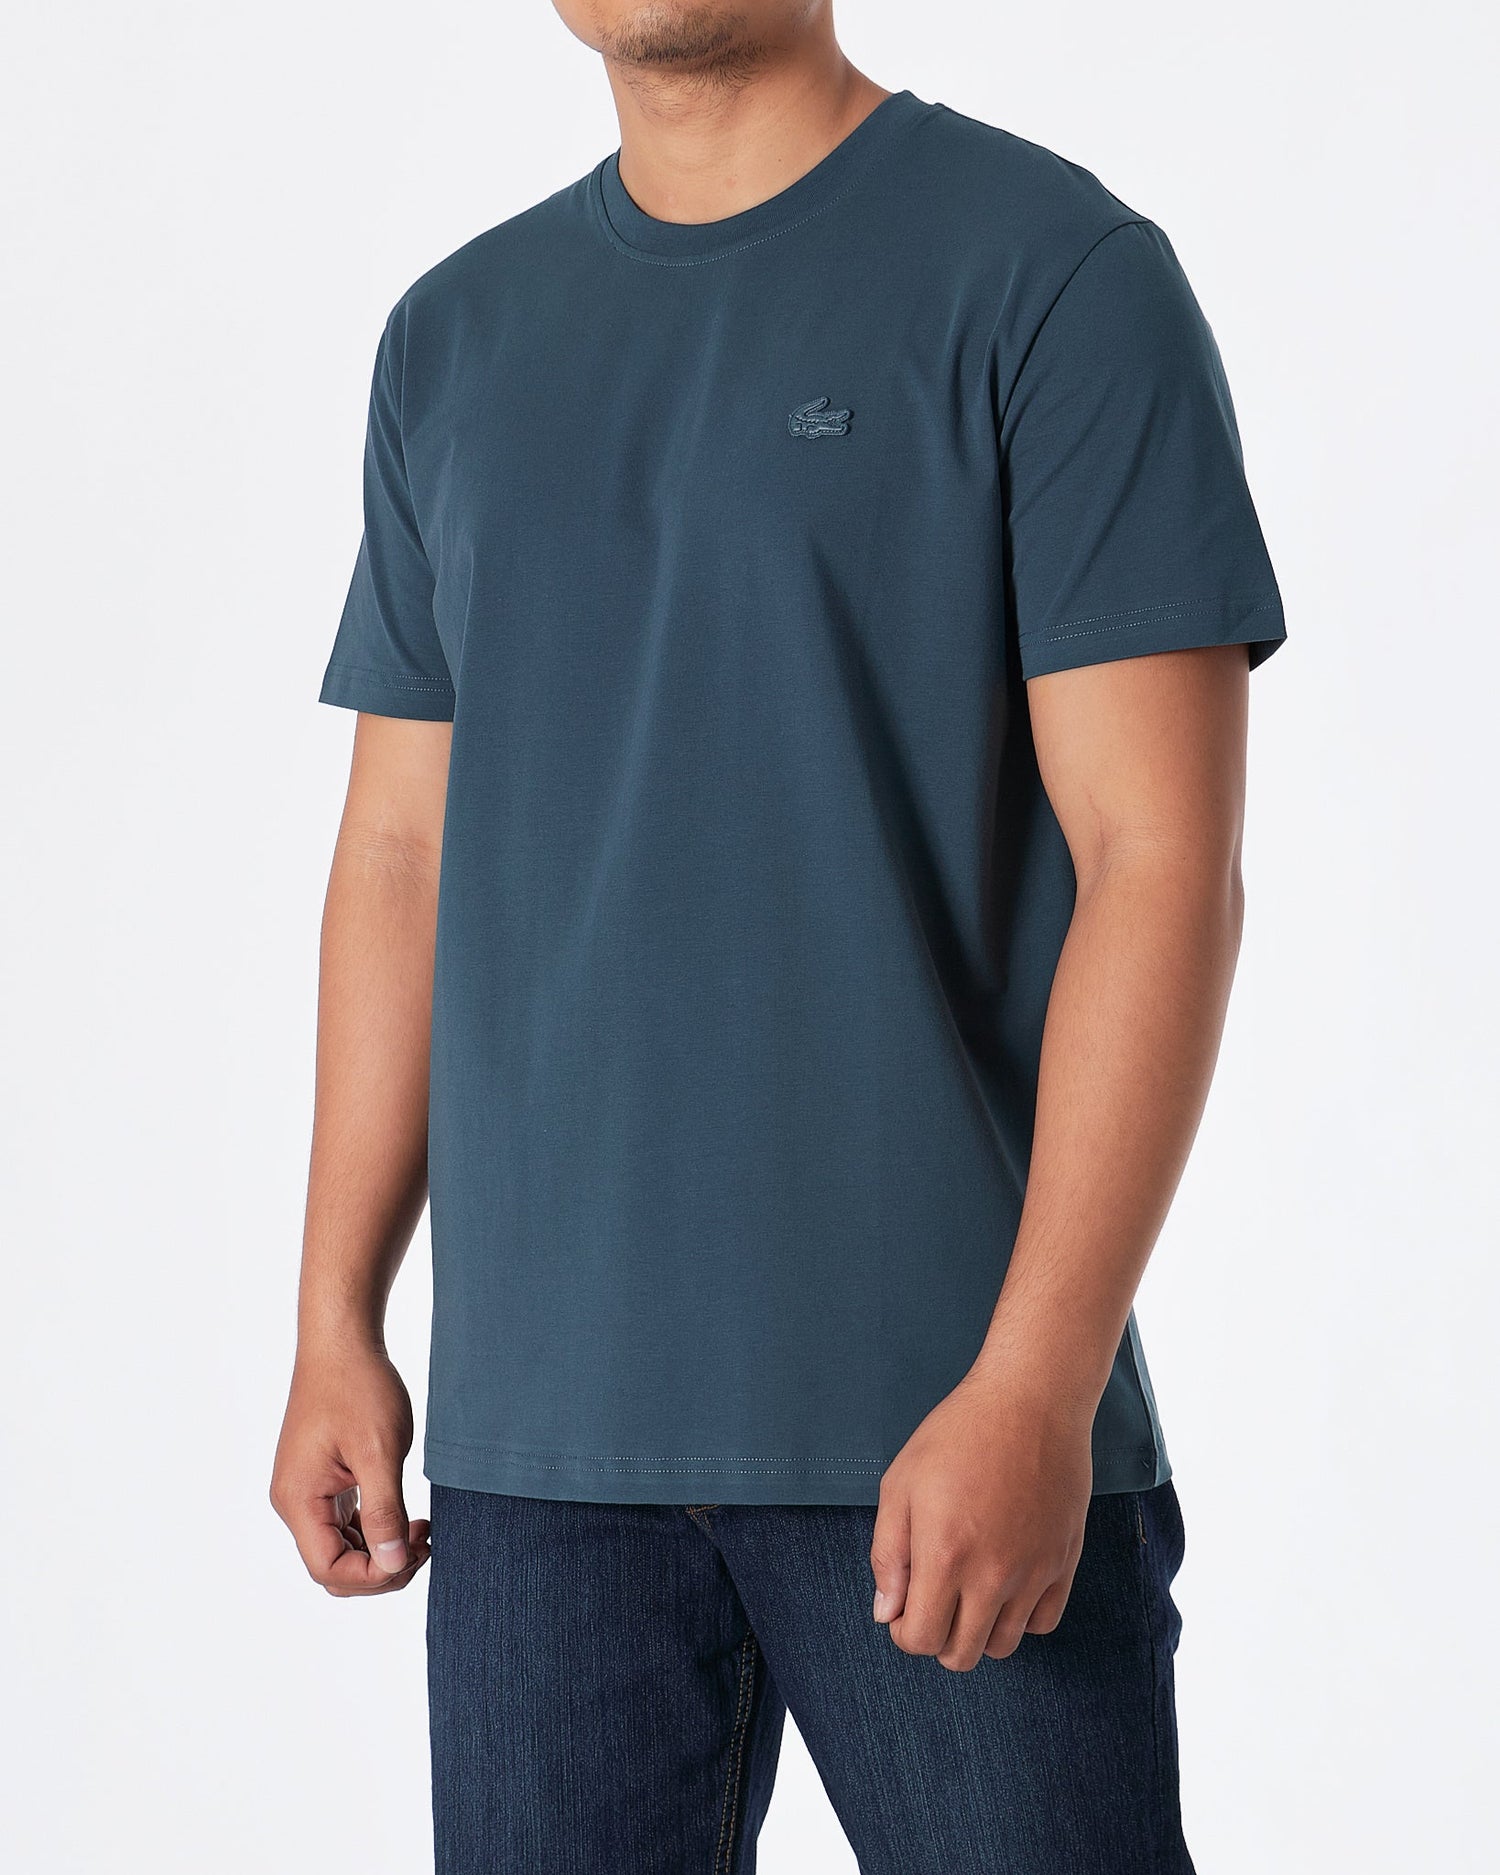 MOI OUTFIT-LAC Plain Men Blue T-Shirt 15.90